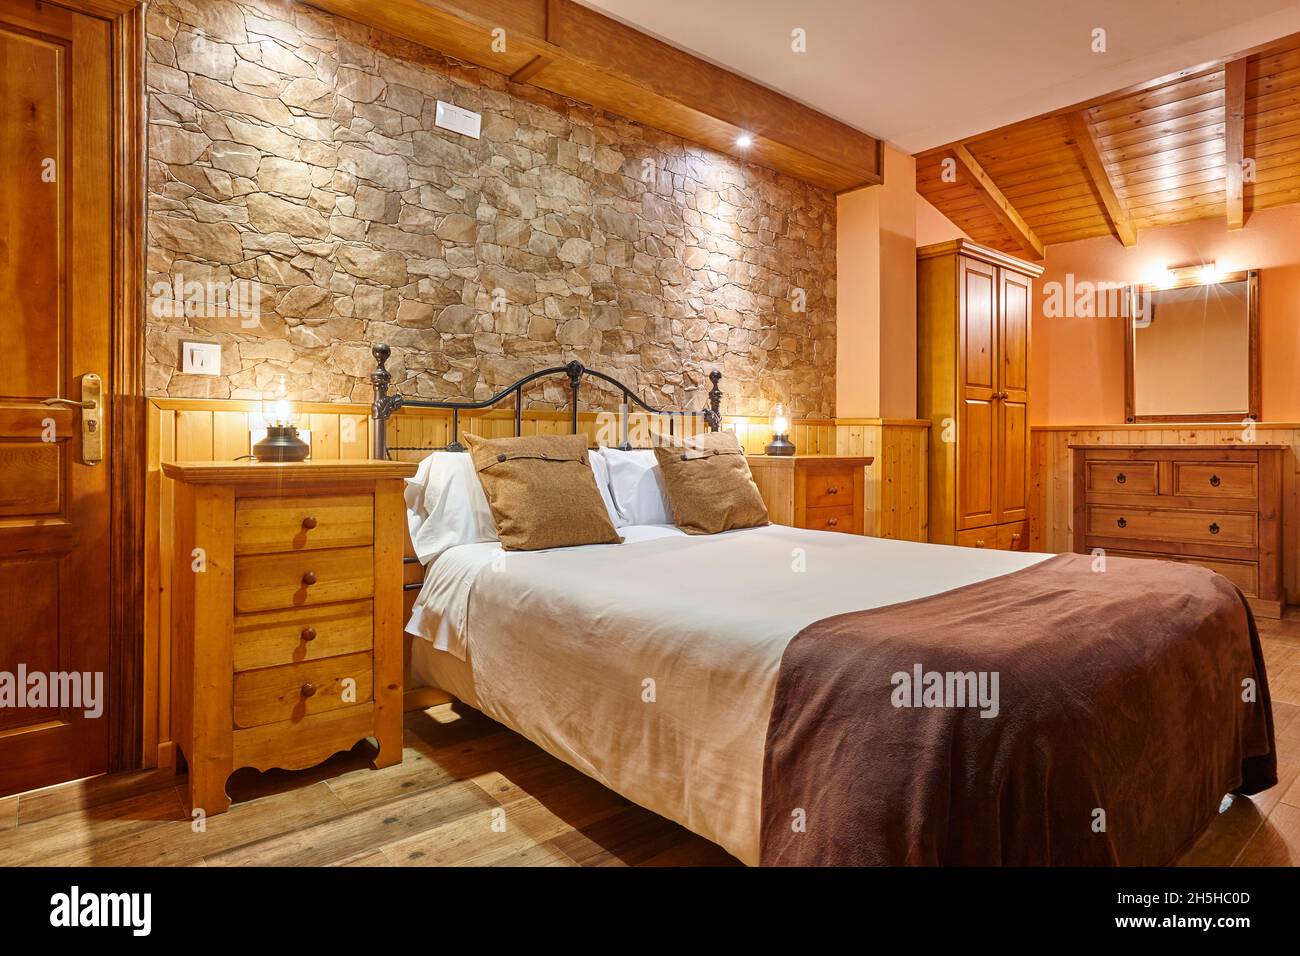 Rustikales Schlafzimmer im Innenbereich. Dekoration aus Holz und Stein.  Niemand Stockfotografie - Alamy